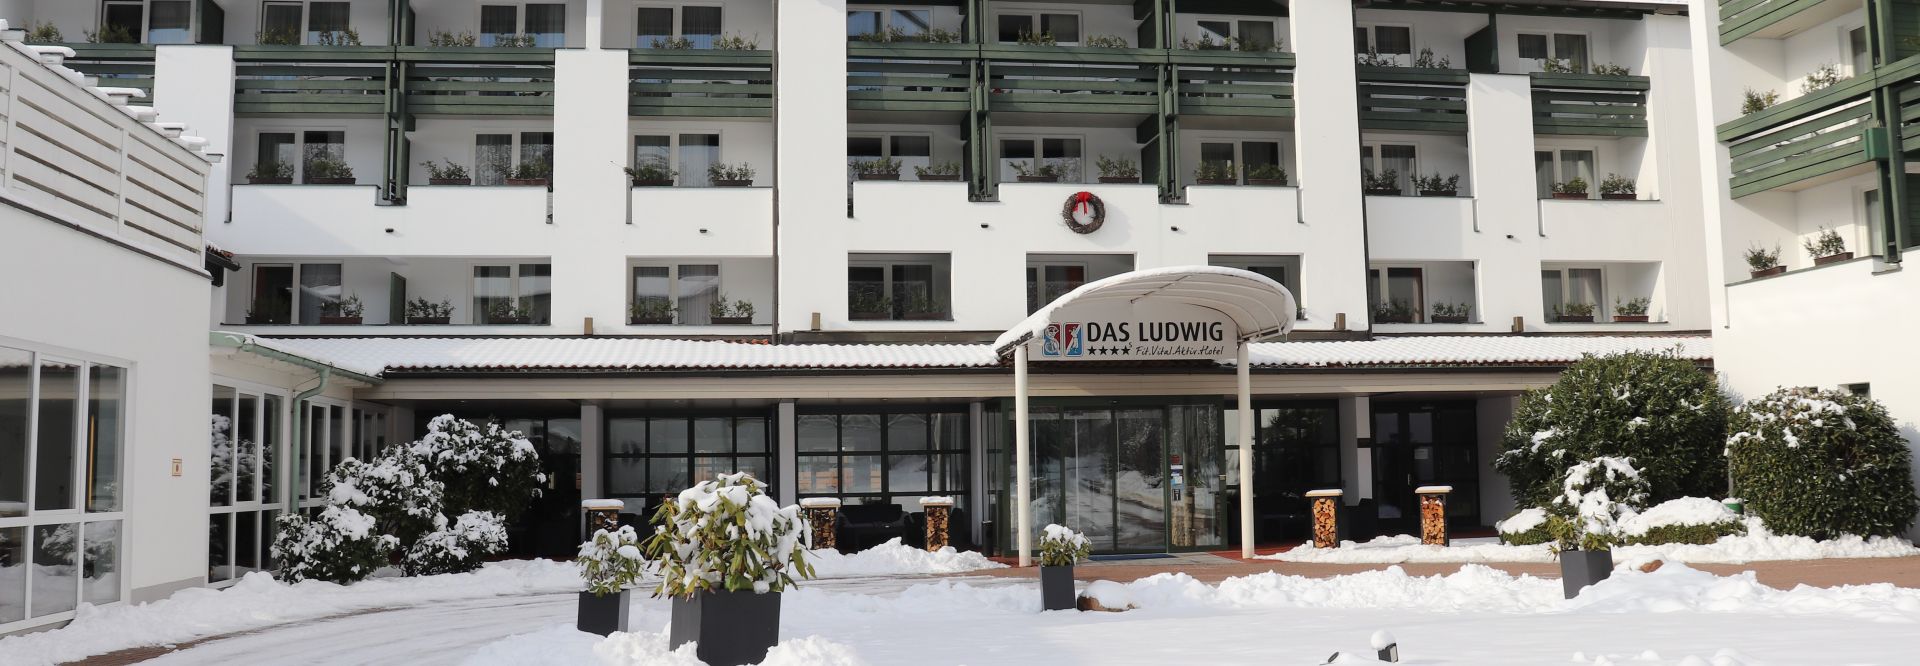 Hotel umgeben von Schnee (Hotel Das Ludwig)